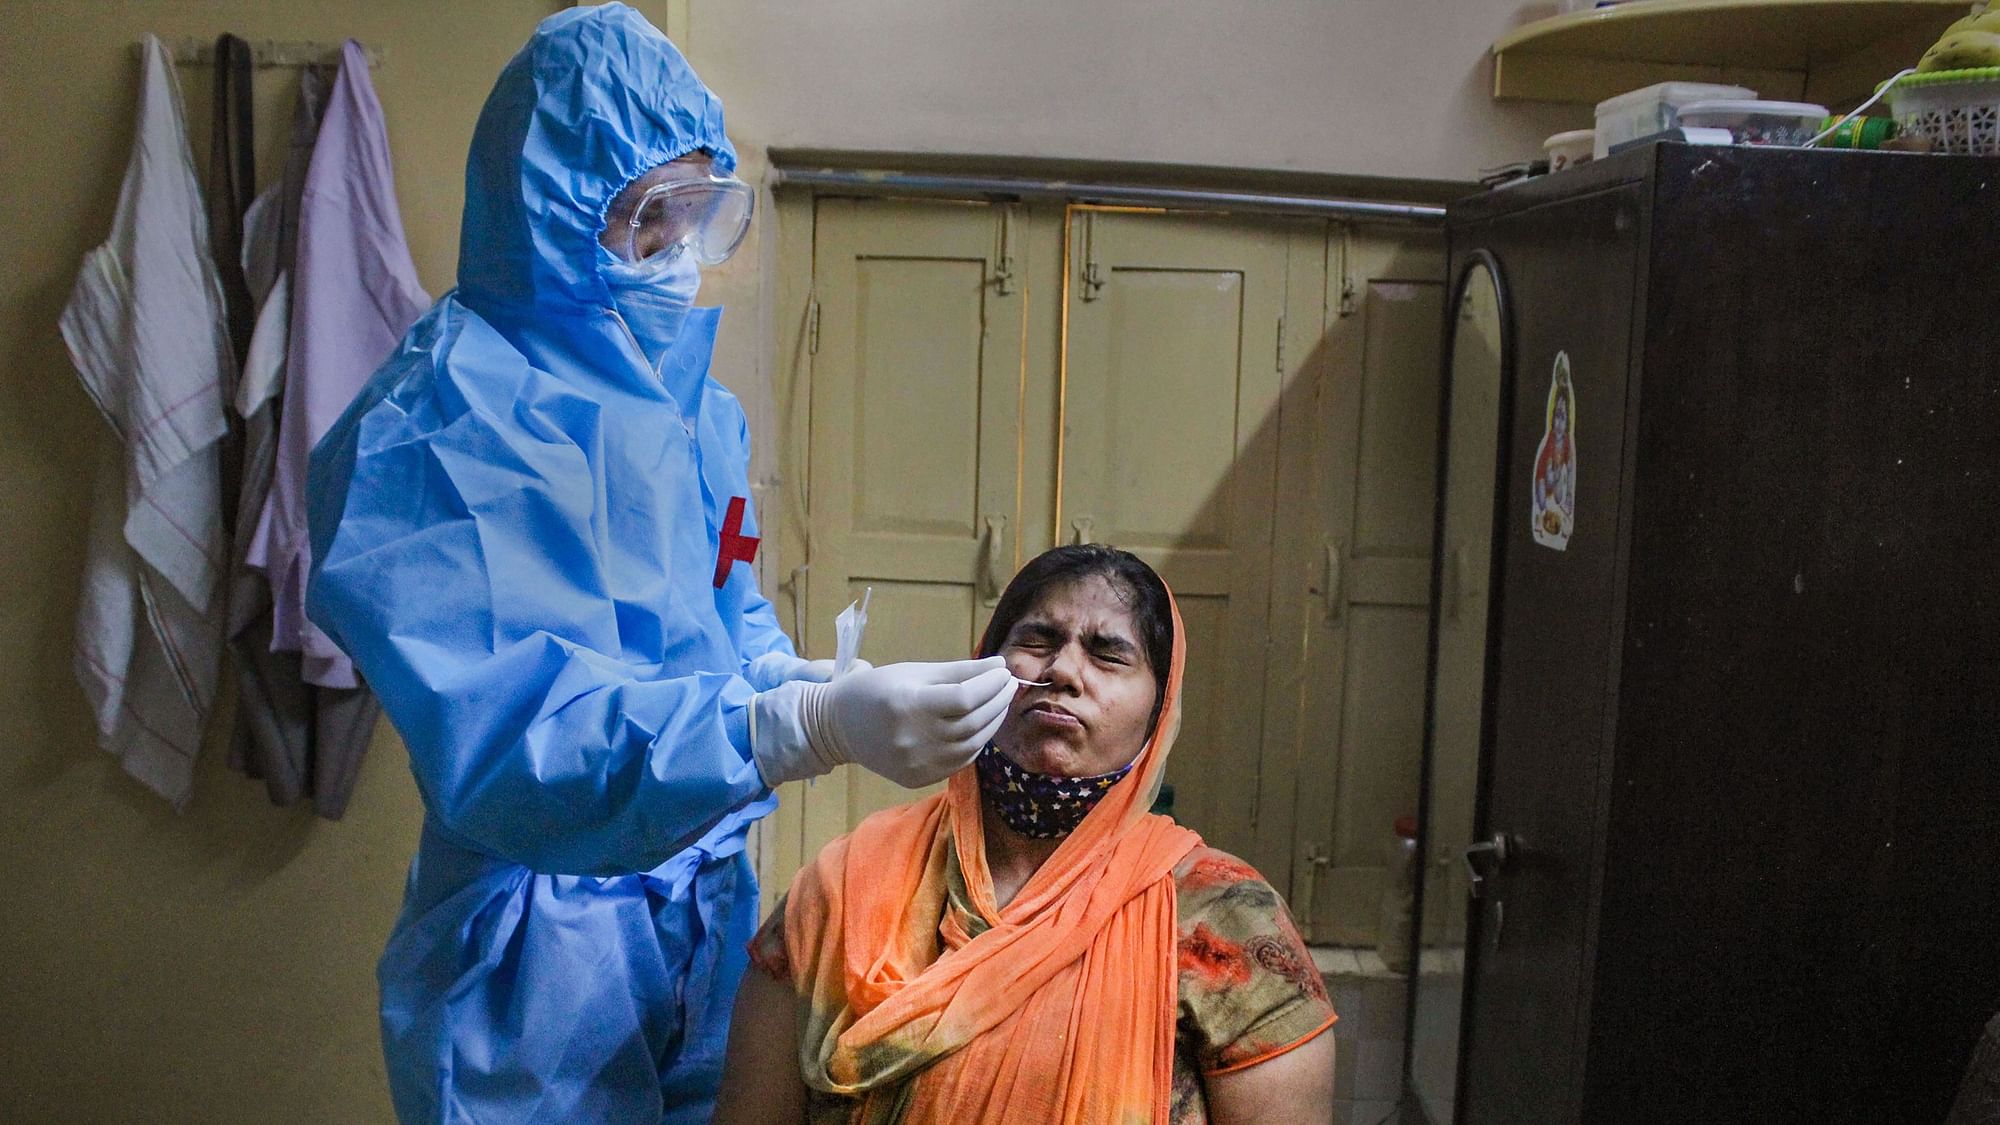 फेफड़े, दिल्ली के मरीजों के लिए दोगुना है कोरोना का खतरा: एक्सपर्ट